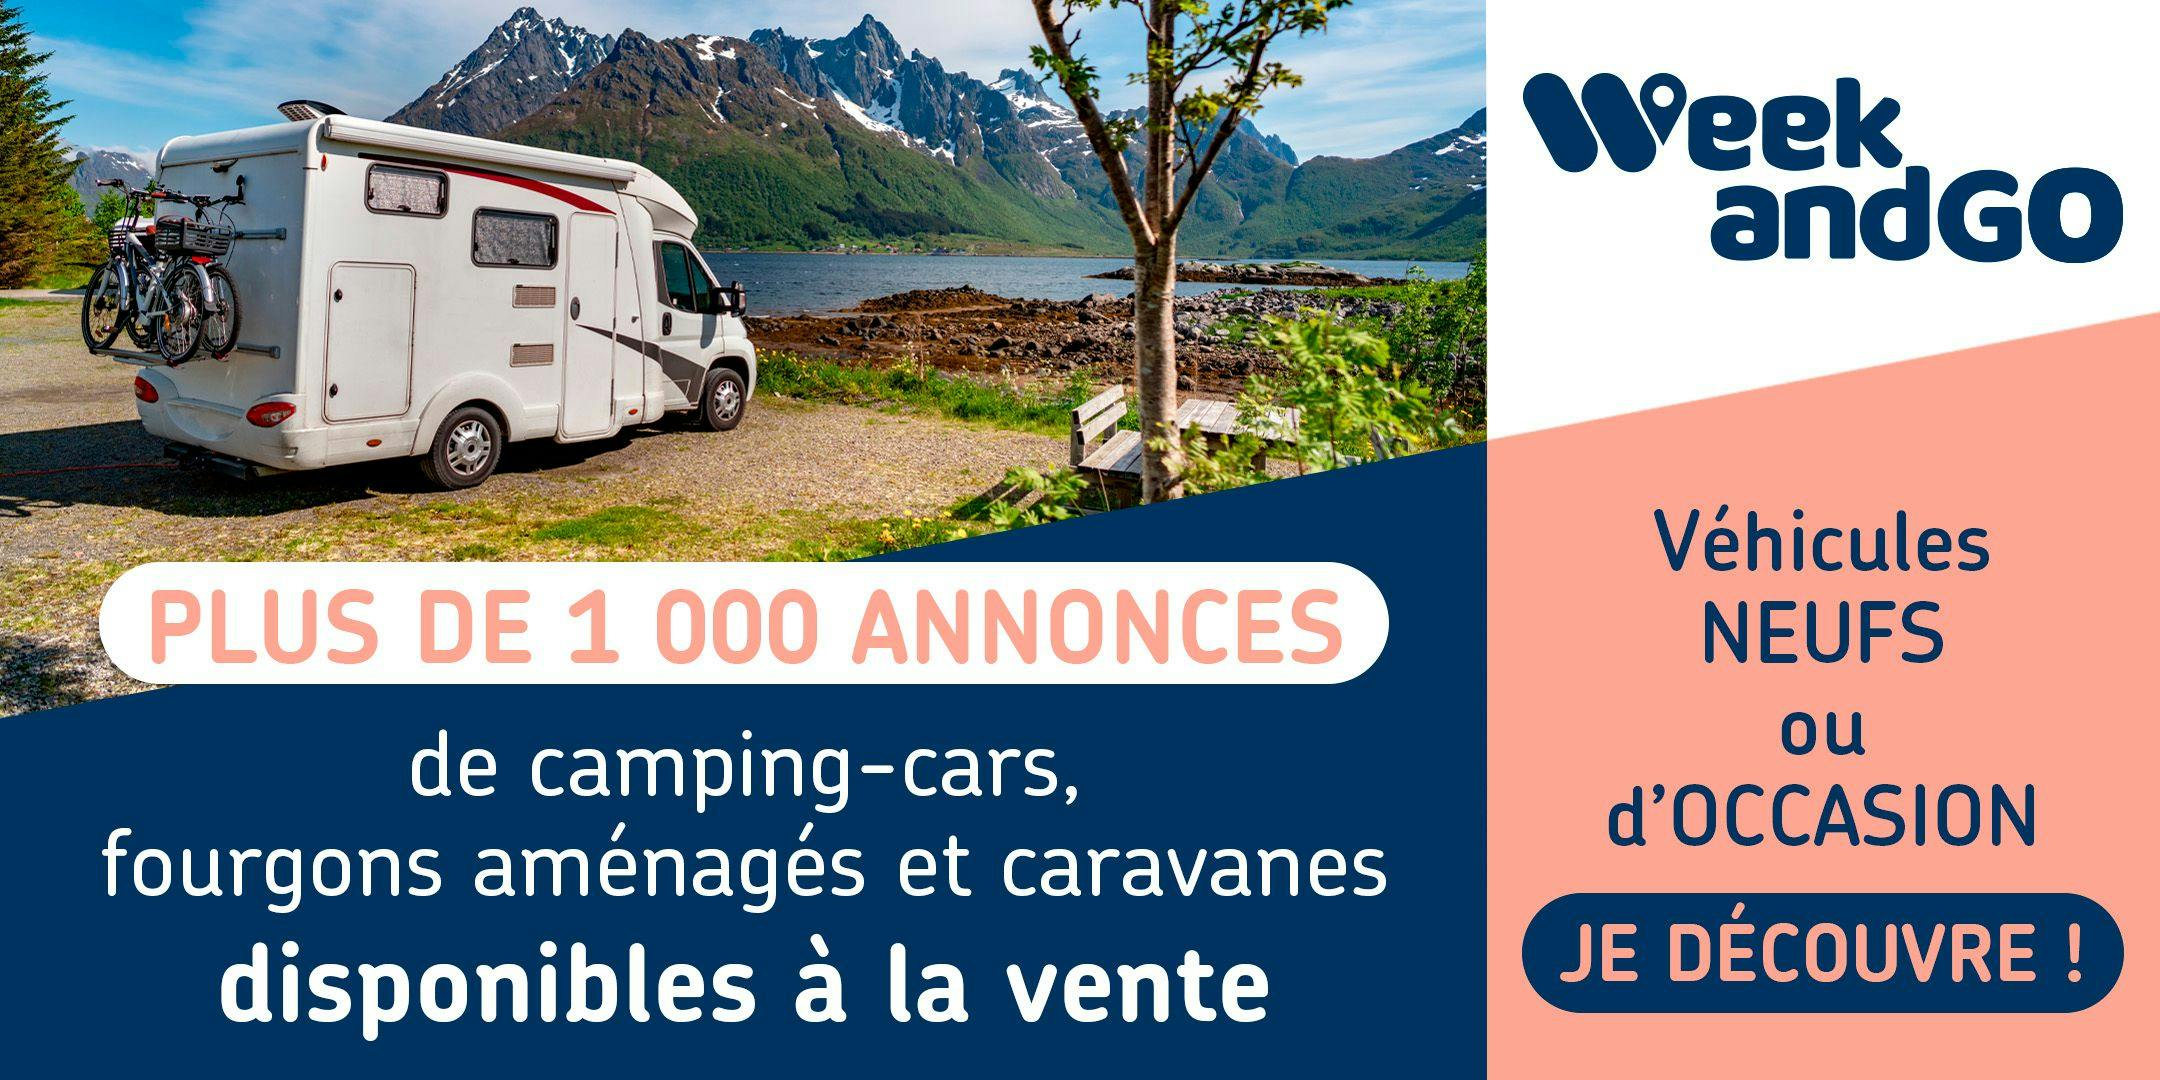 Annonces de camping-cars neufs ou d'occasion